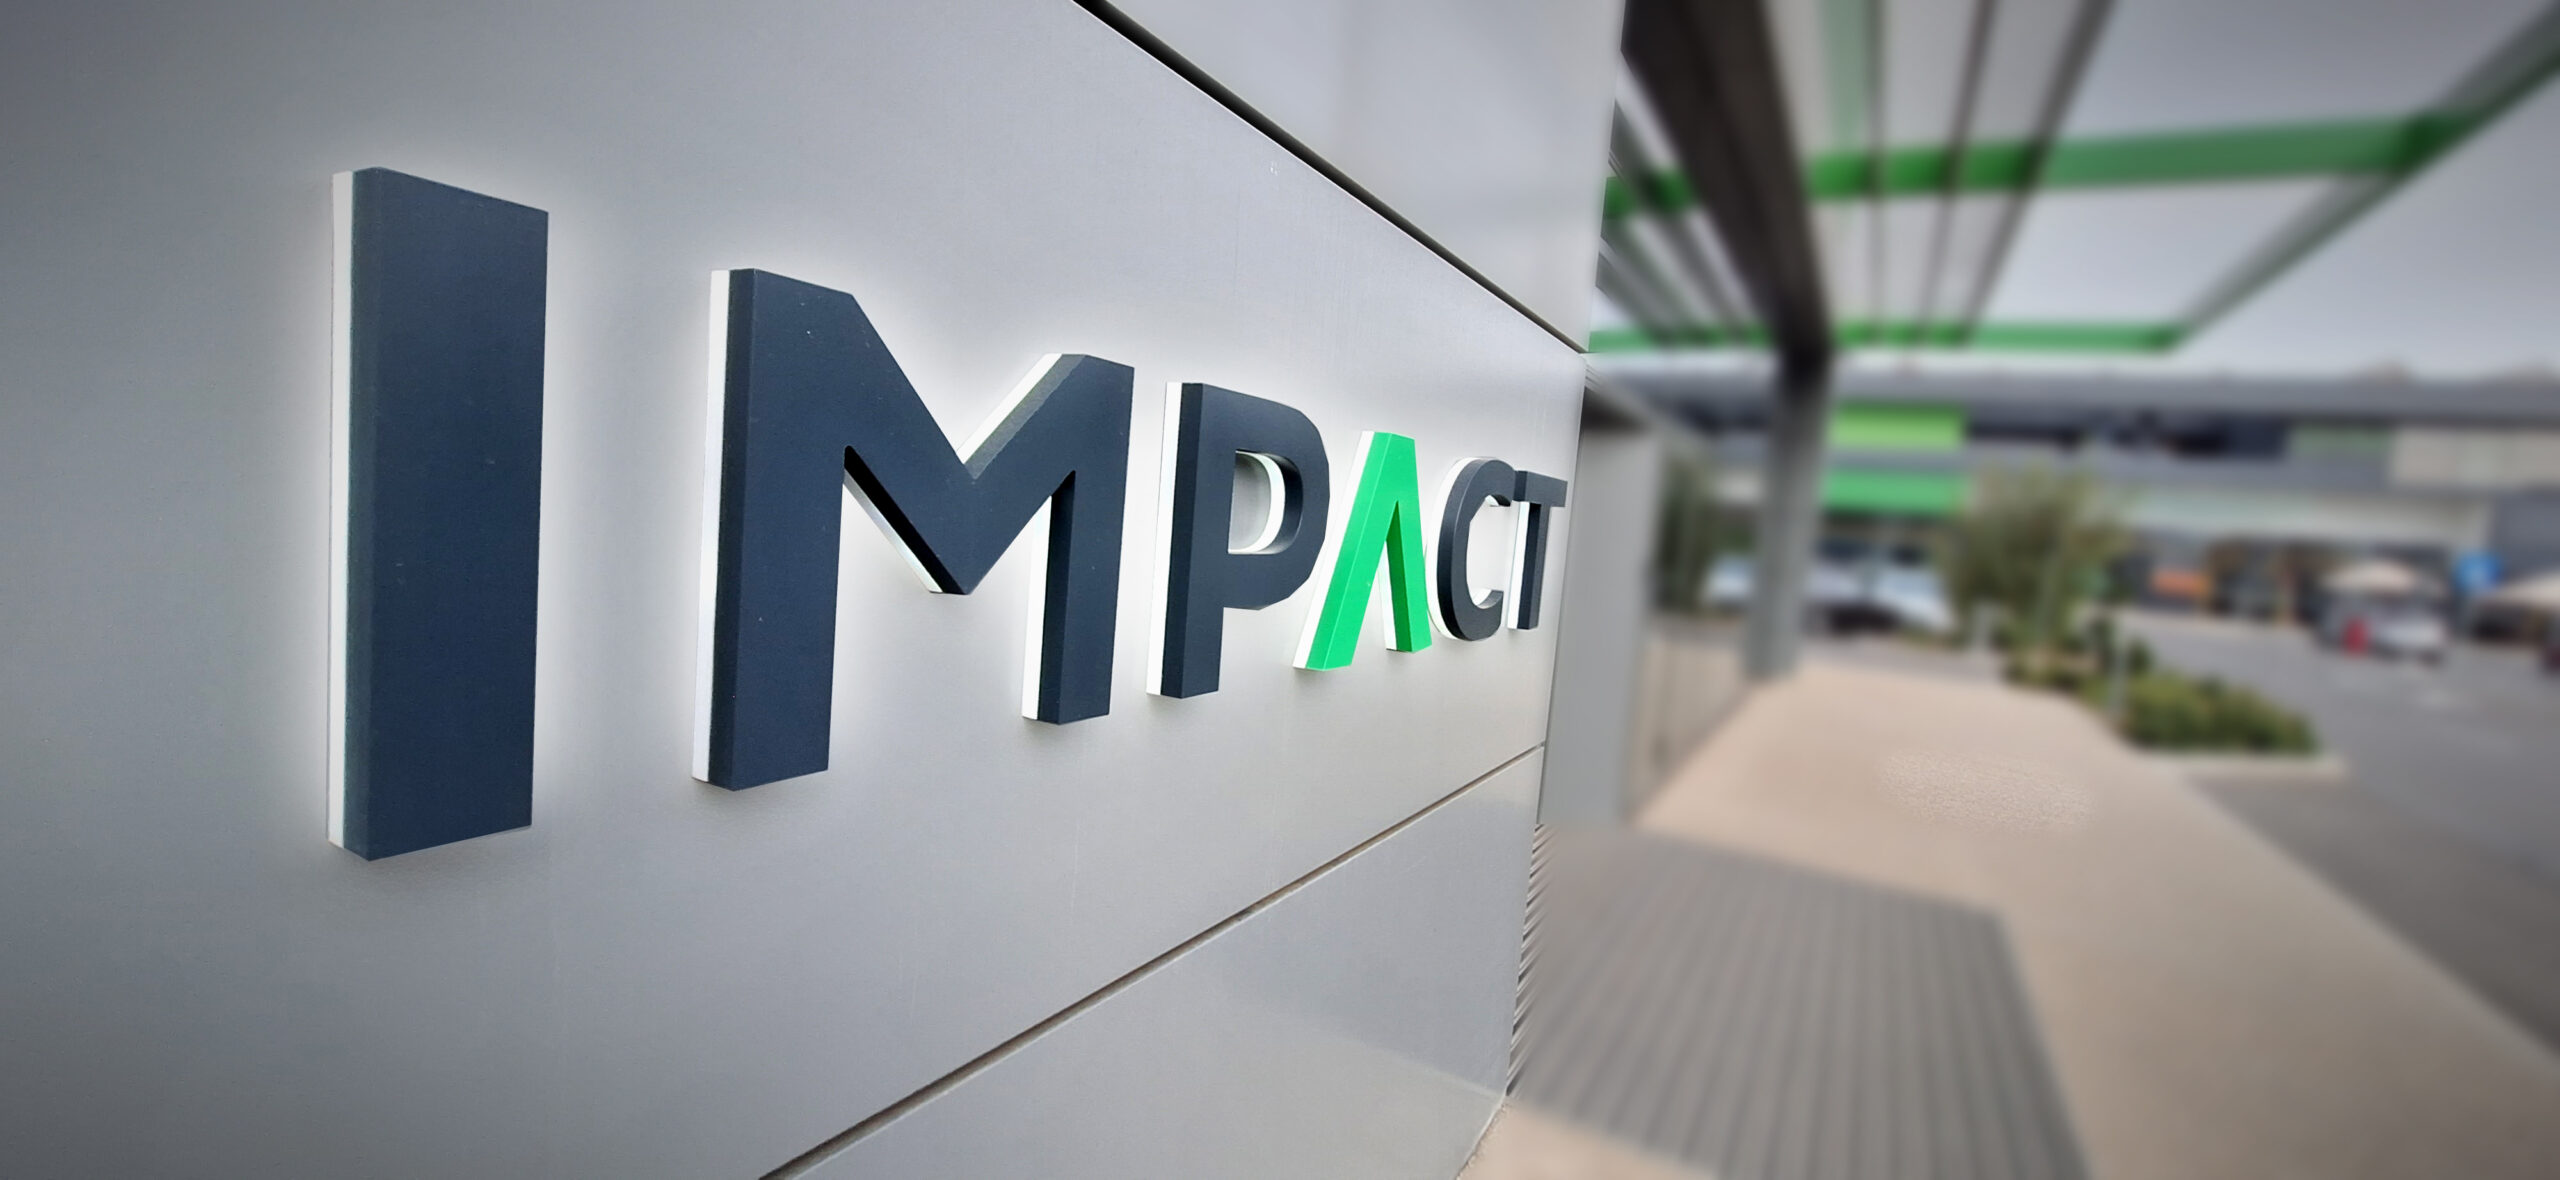 IMPACT își menține marja brută de 31% și raportează venituri de 21,5 milioane euro în primele nouă luni ale anului